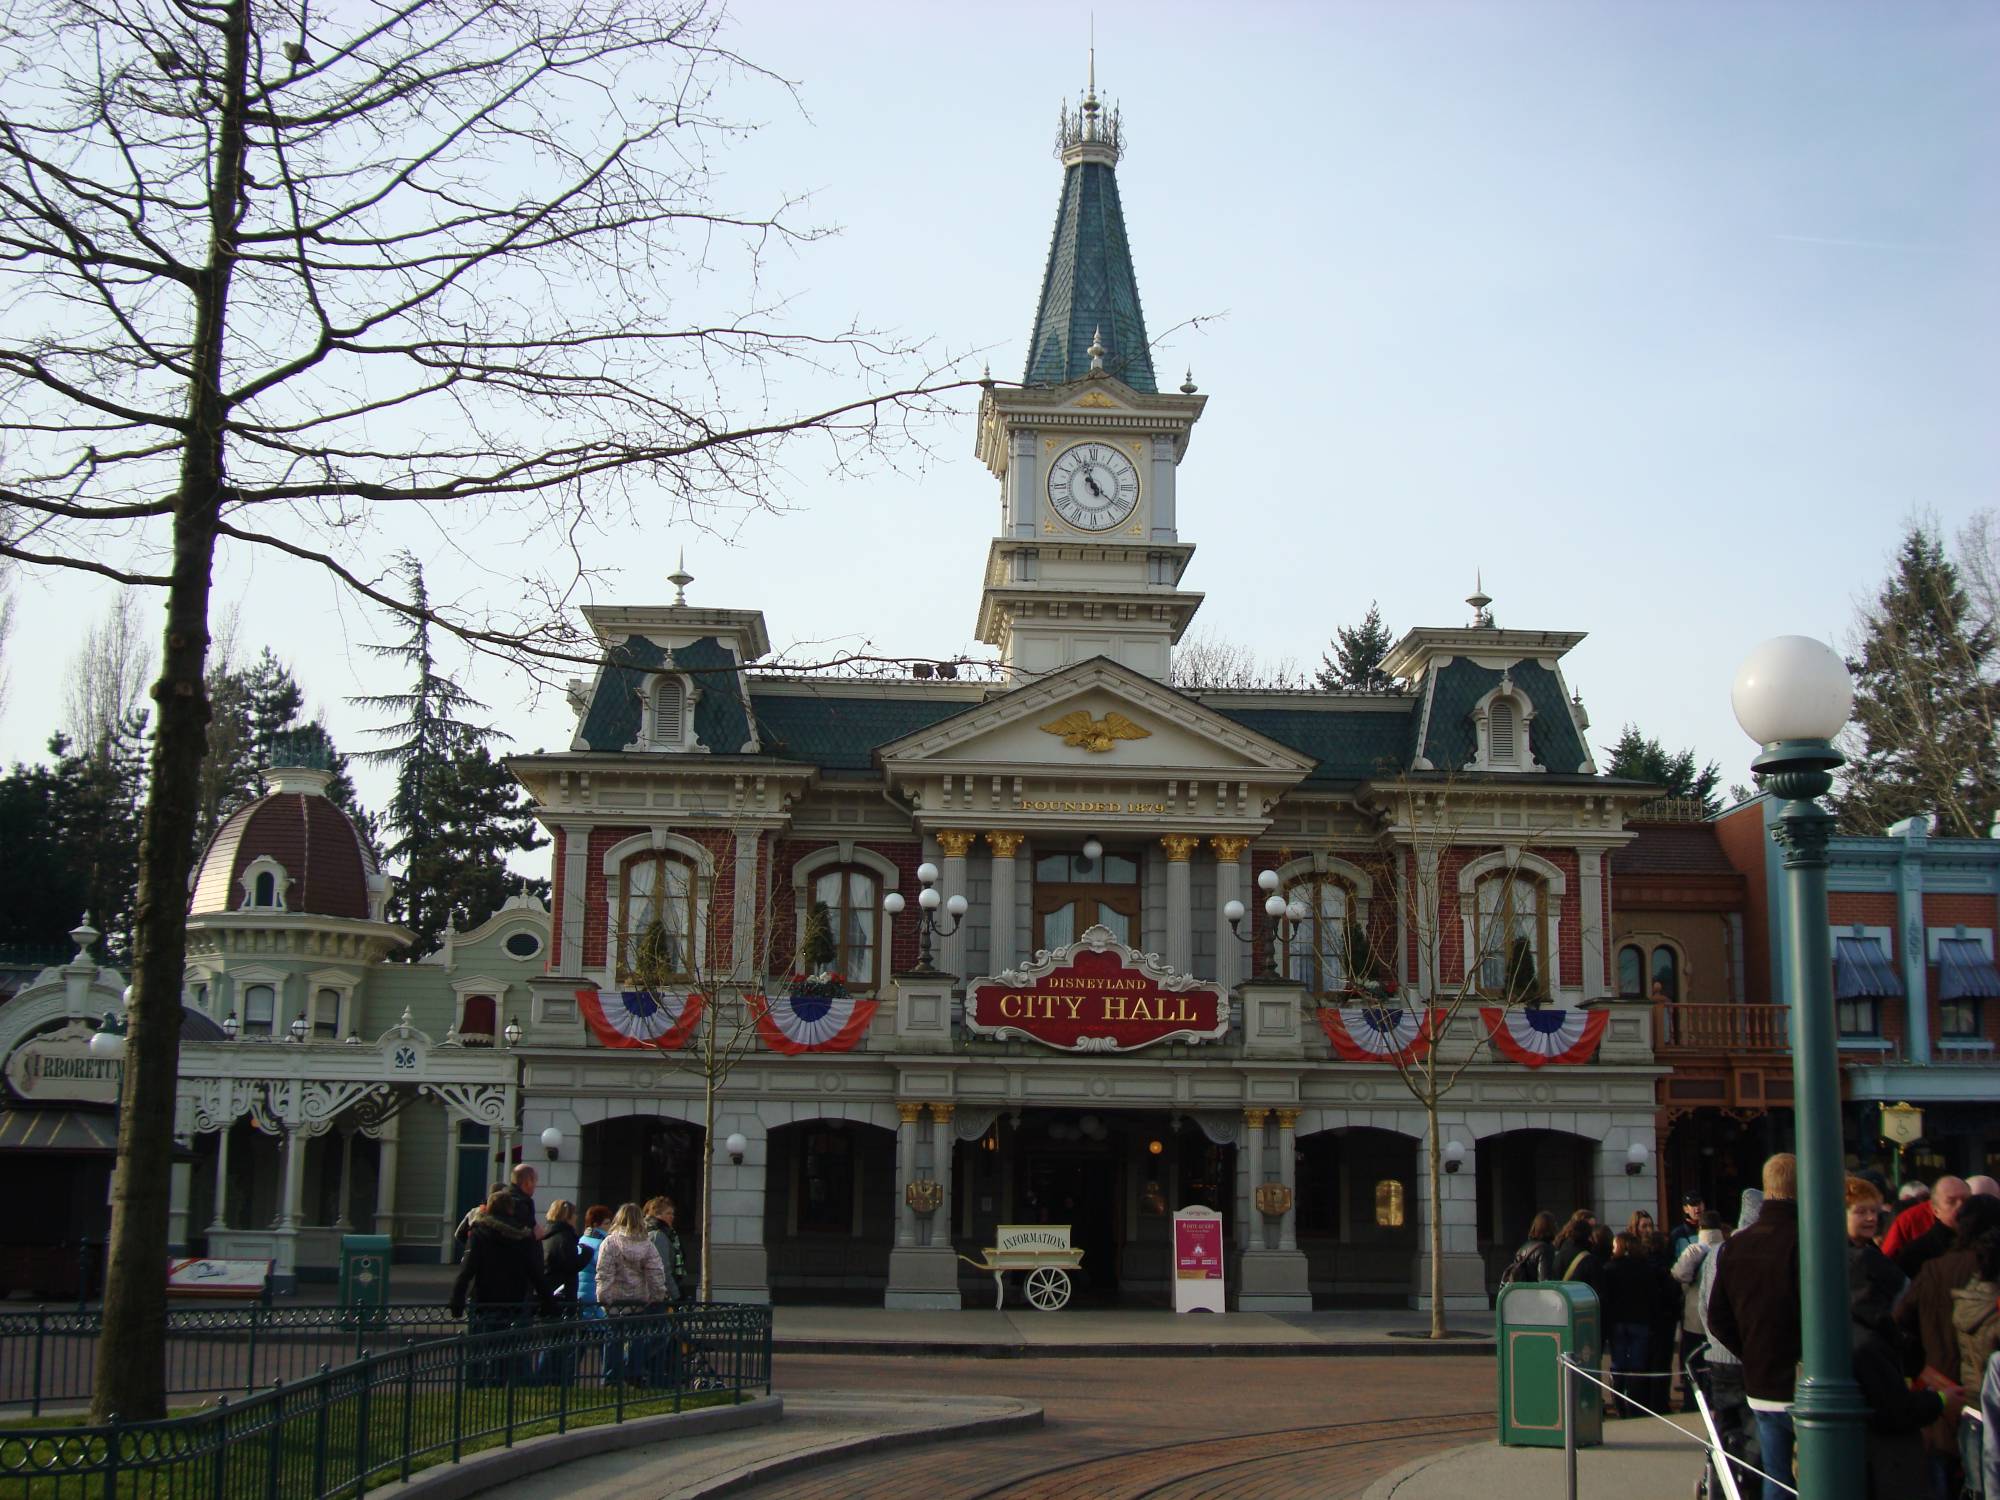 Disneyland Paris - City Hall